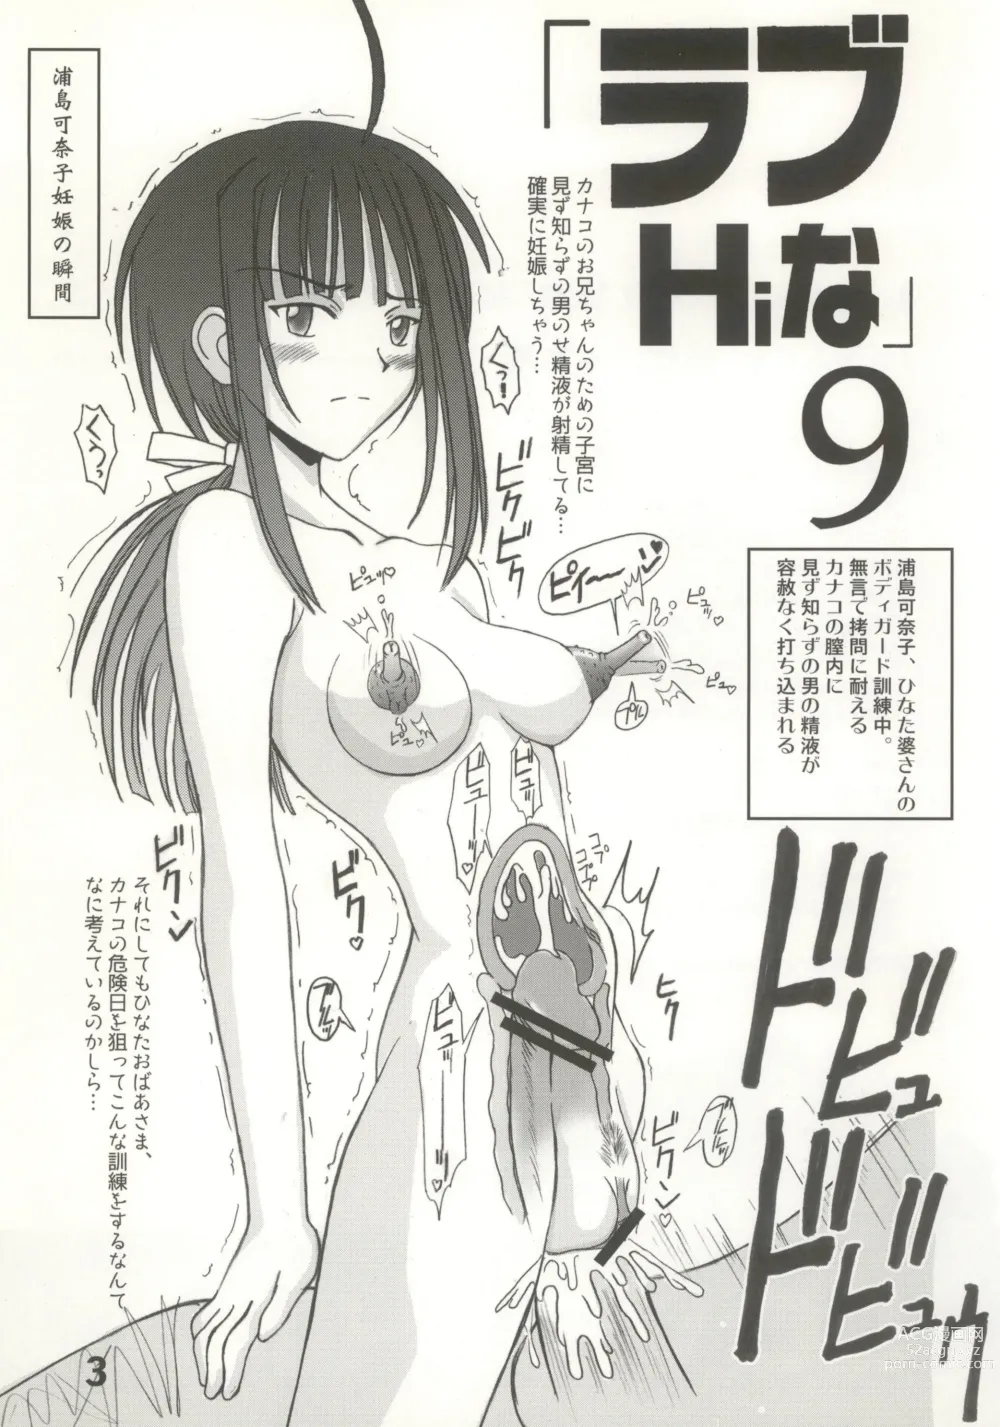 Page 3 of doujinshi Love Hina 9